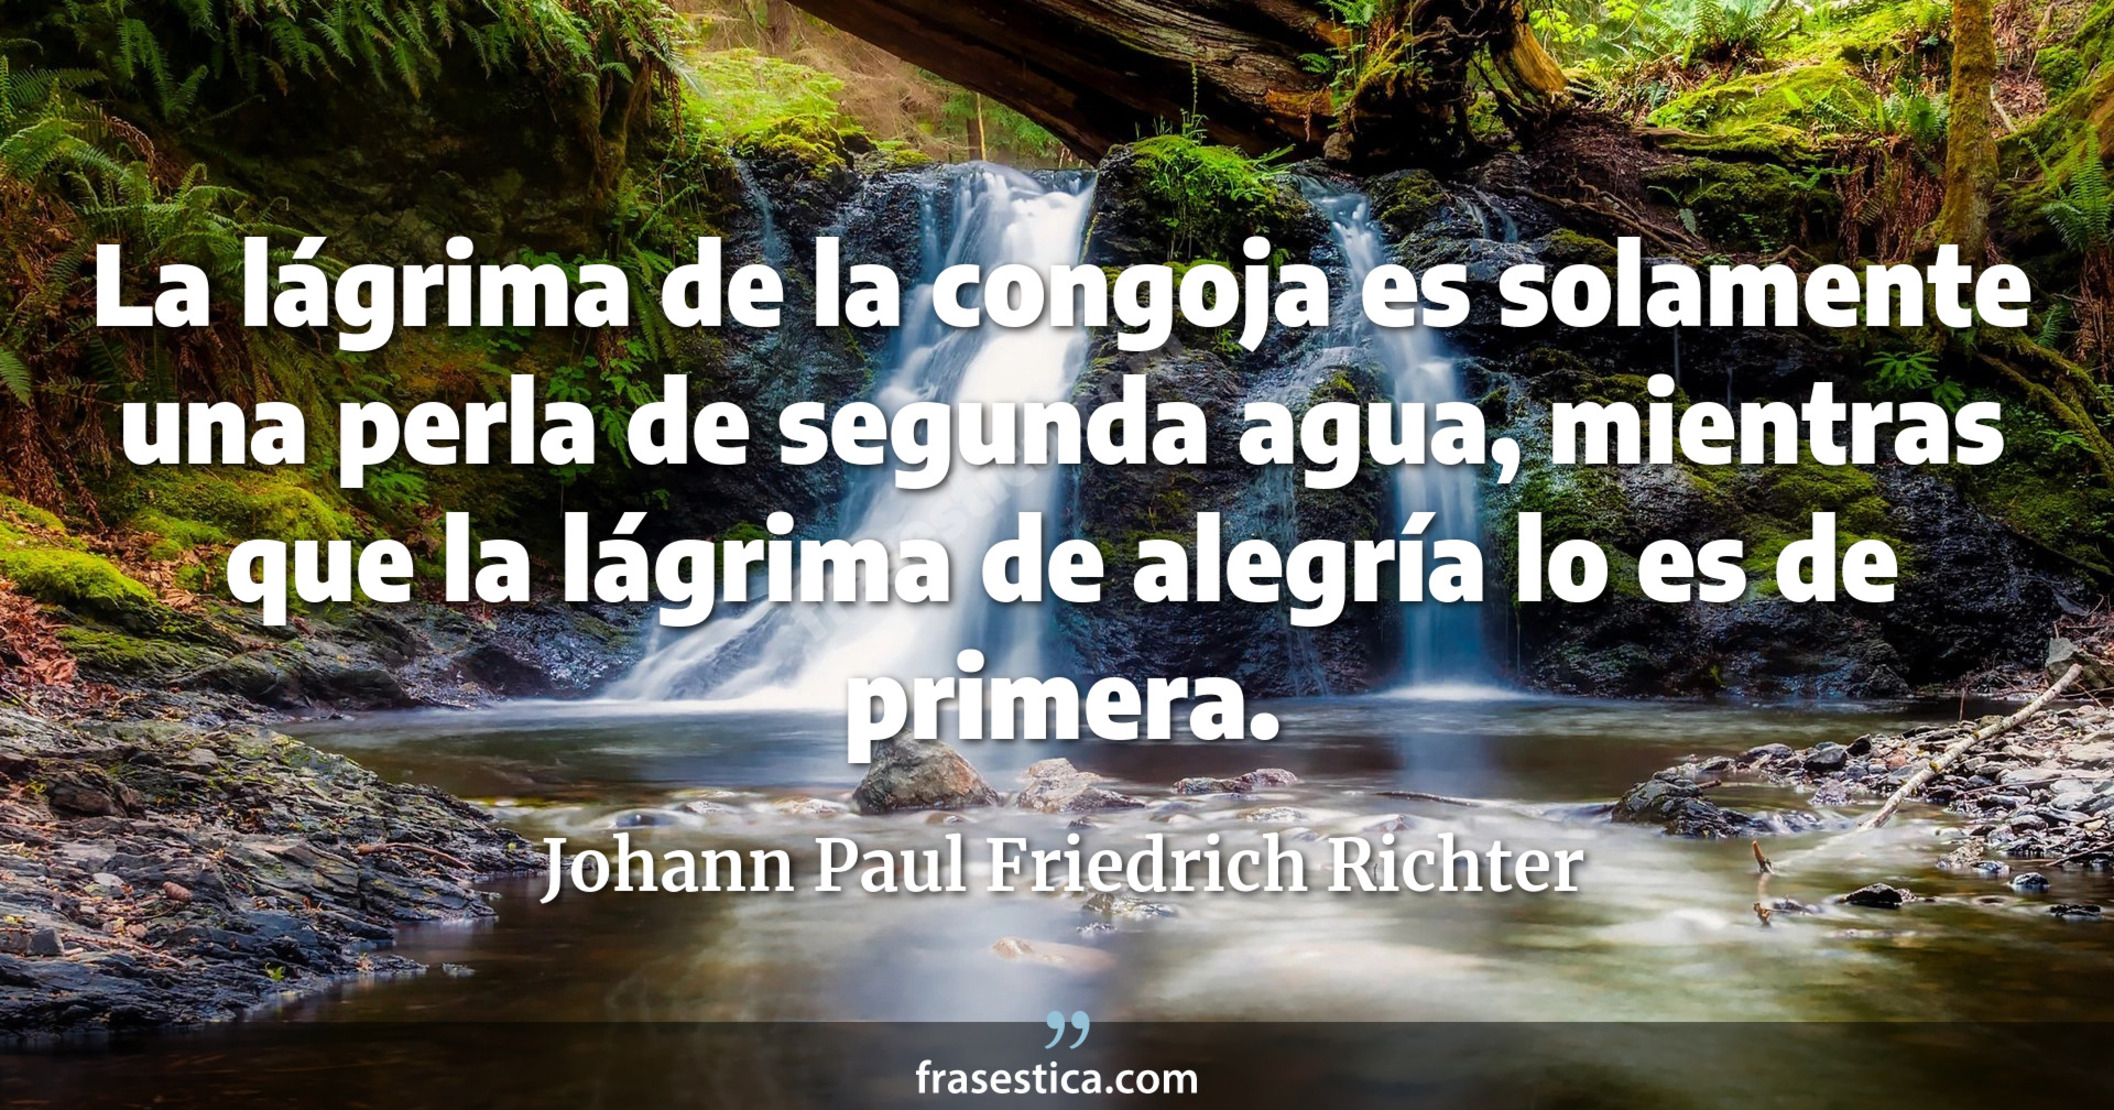 La lágrima de la congoja es solamente una perla de segunda agua, mientras que la lágrima de alegría lo es de primera. - Johann Paul Friedrich Richter